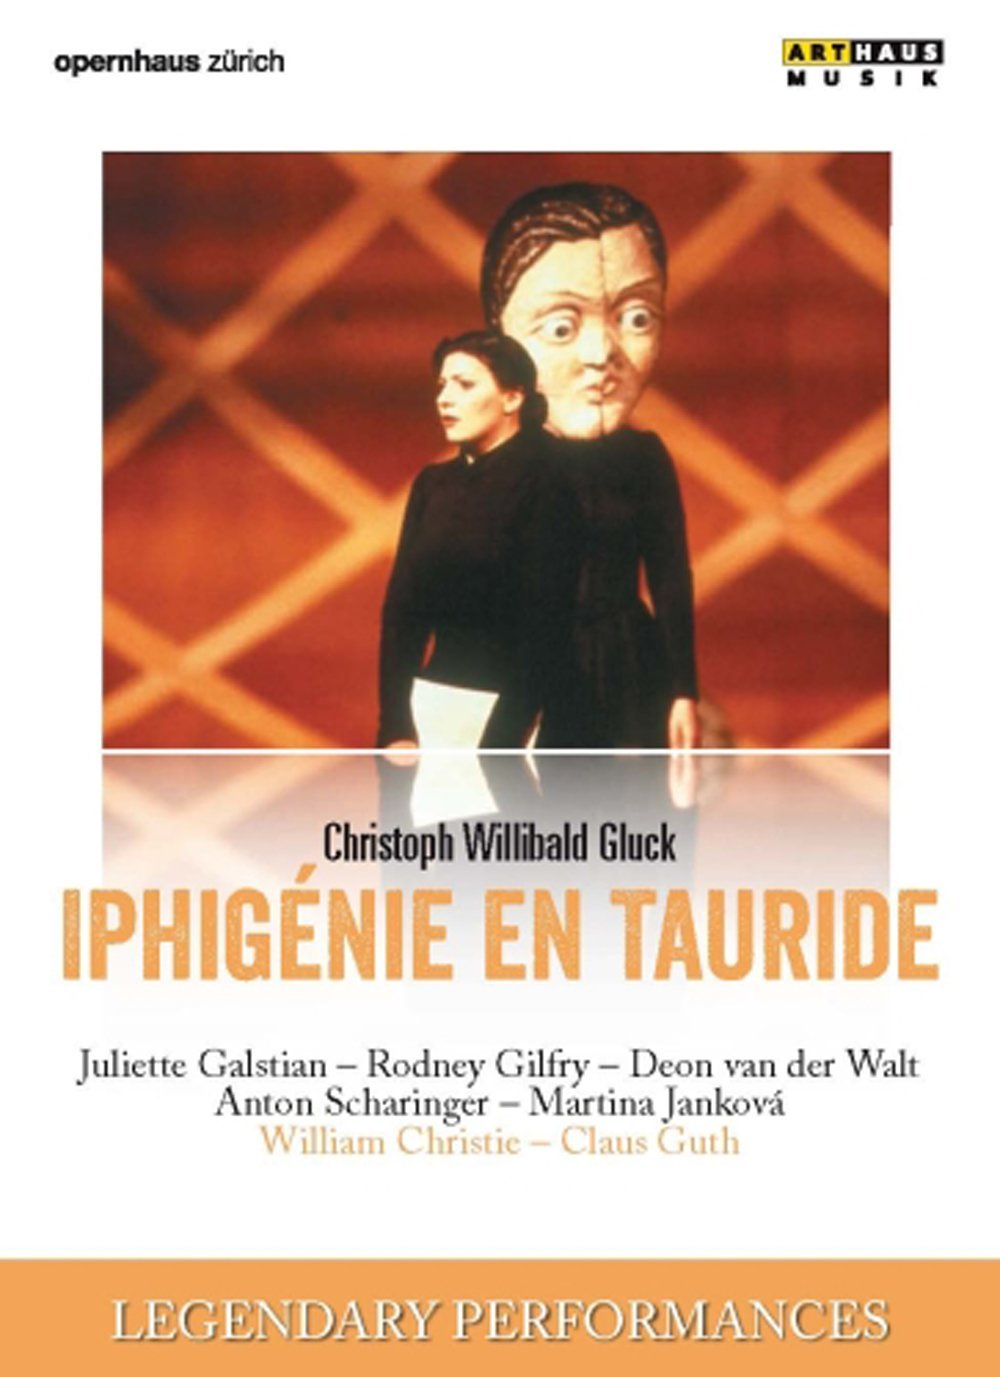 Gluck - Iphigenie en Tauride | Juliette Galstian, Rodney Gilfry, Christoph Willibald Gluck, William Christie